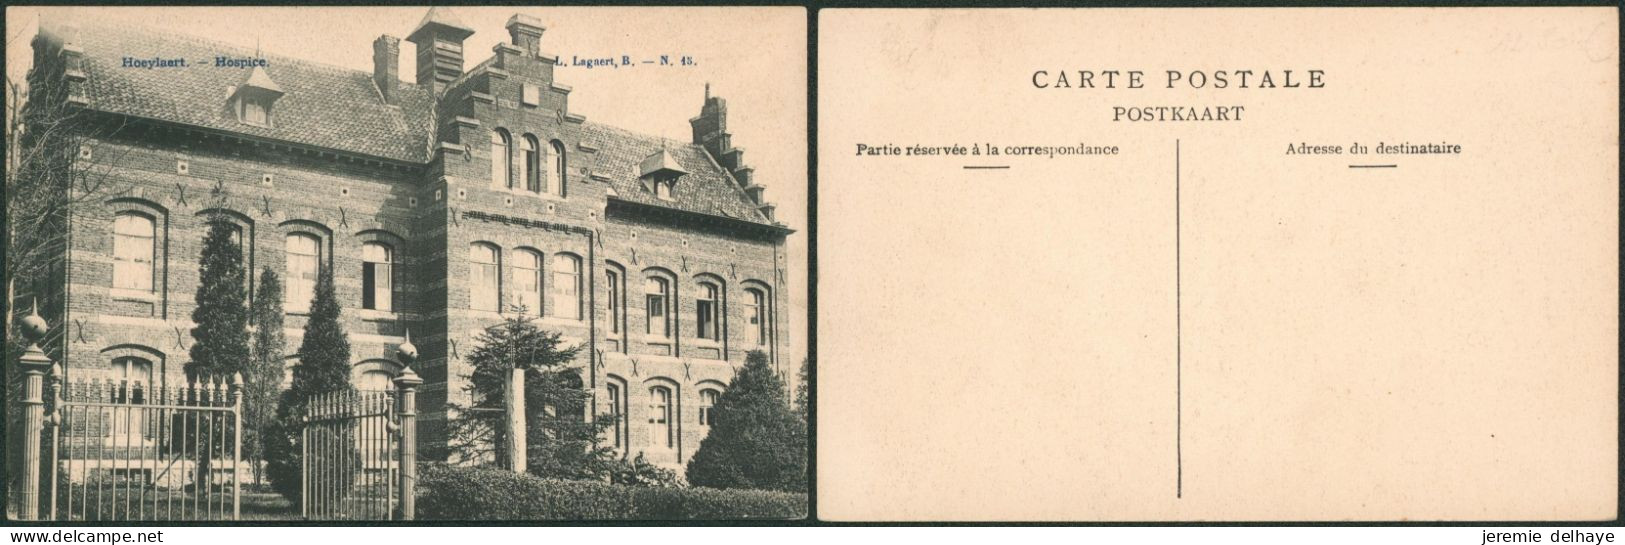 Carte Postale - Hoeylaert : Hospice (L. Lagaert N°15) - Höilaart